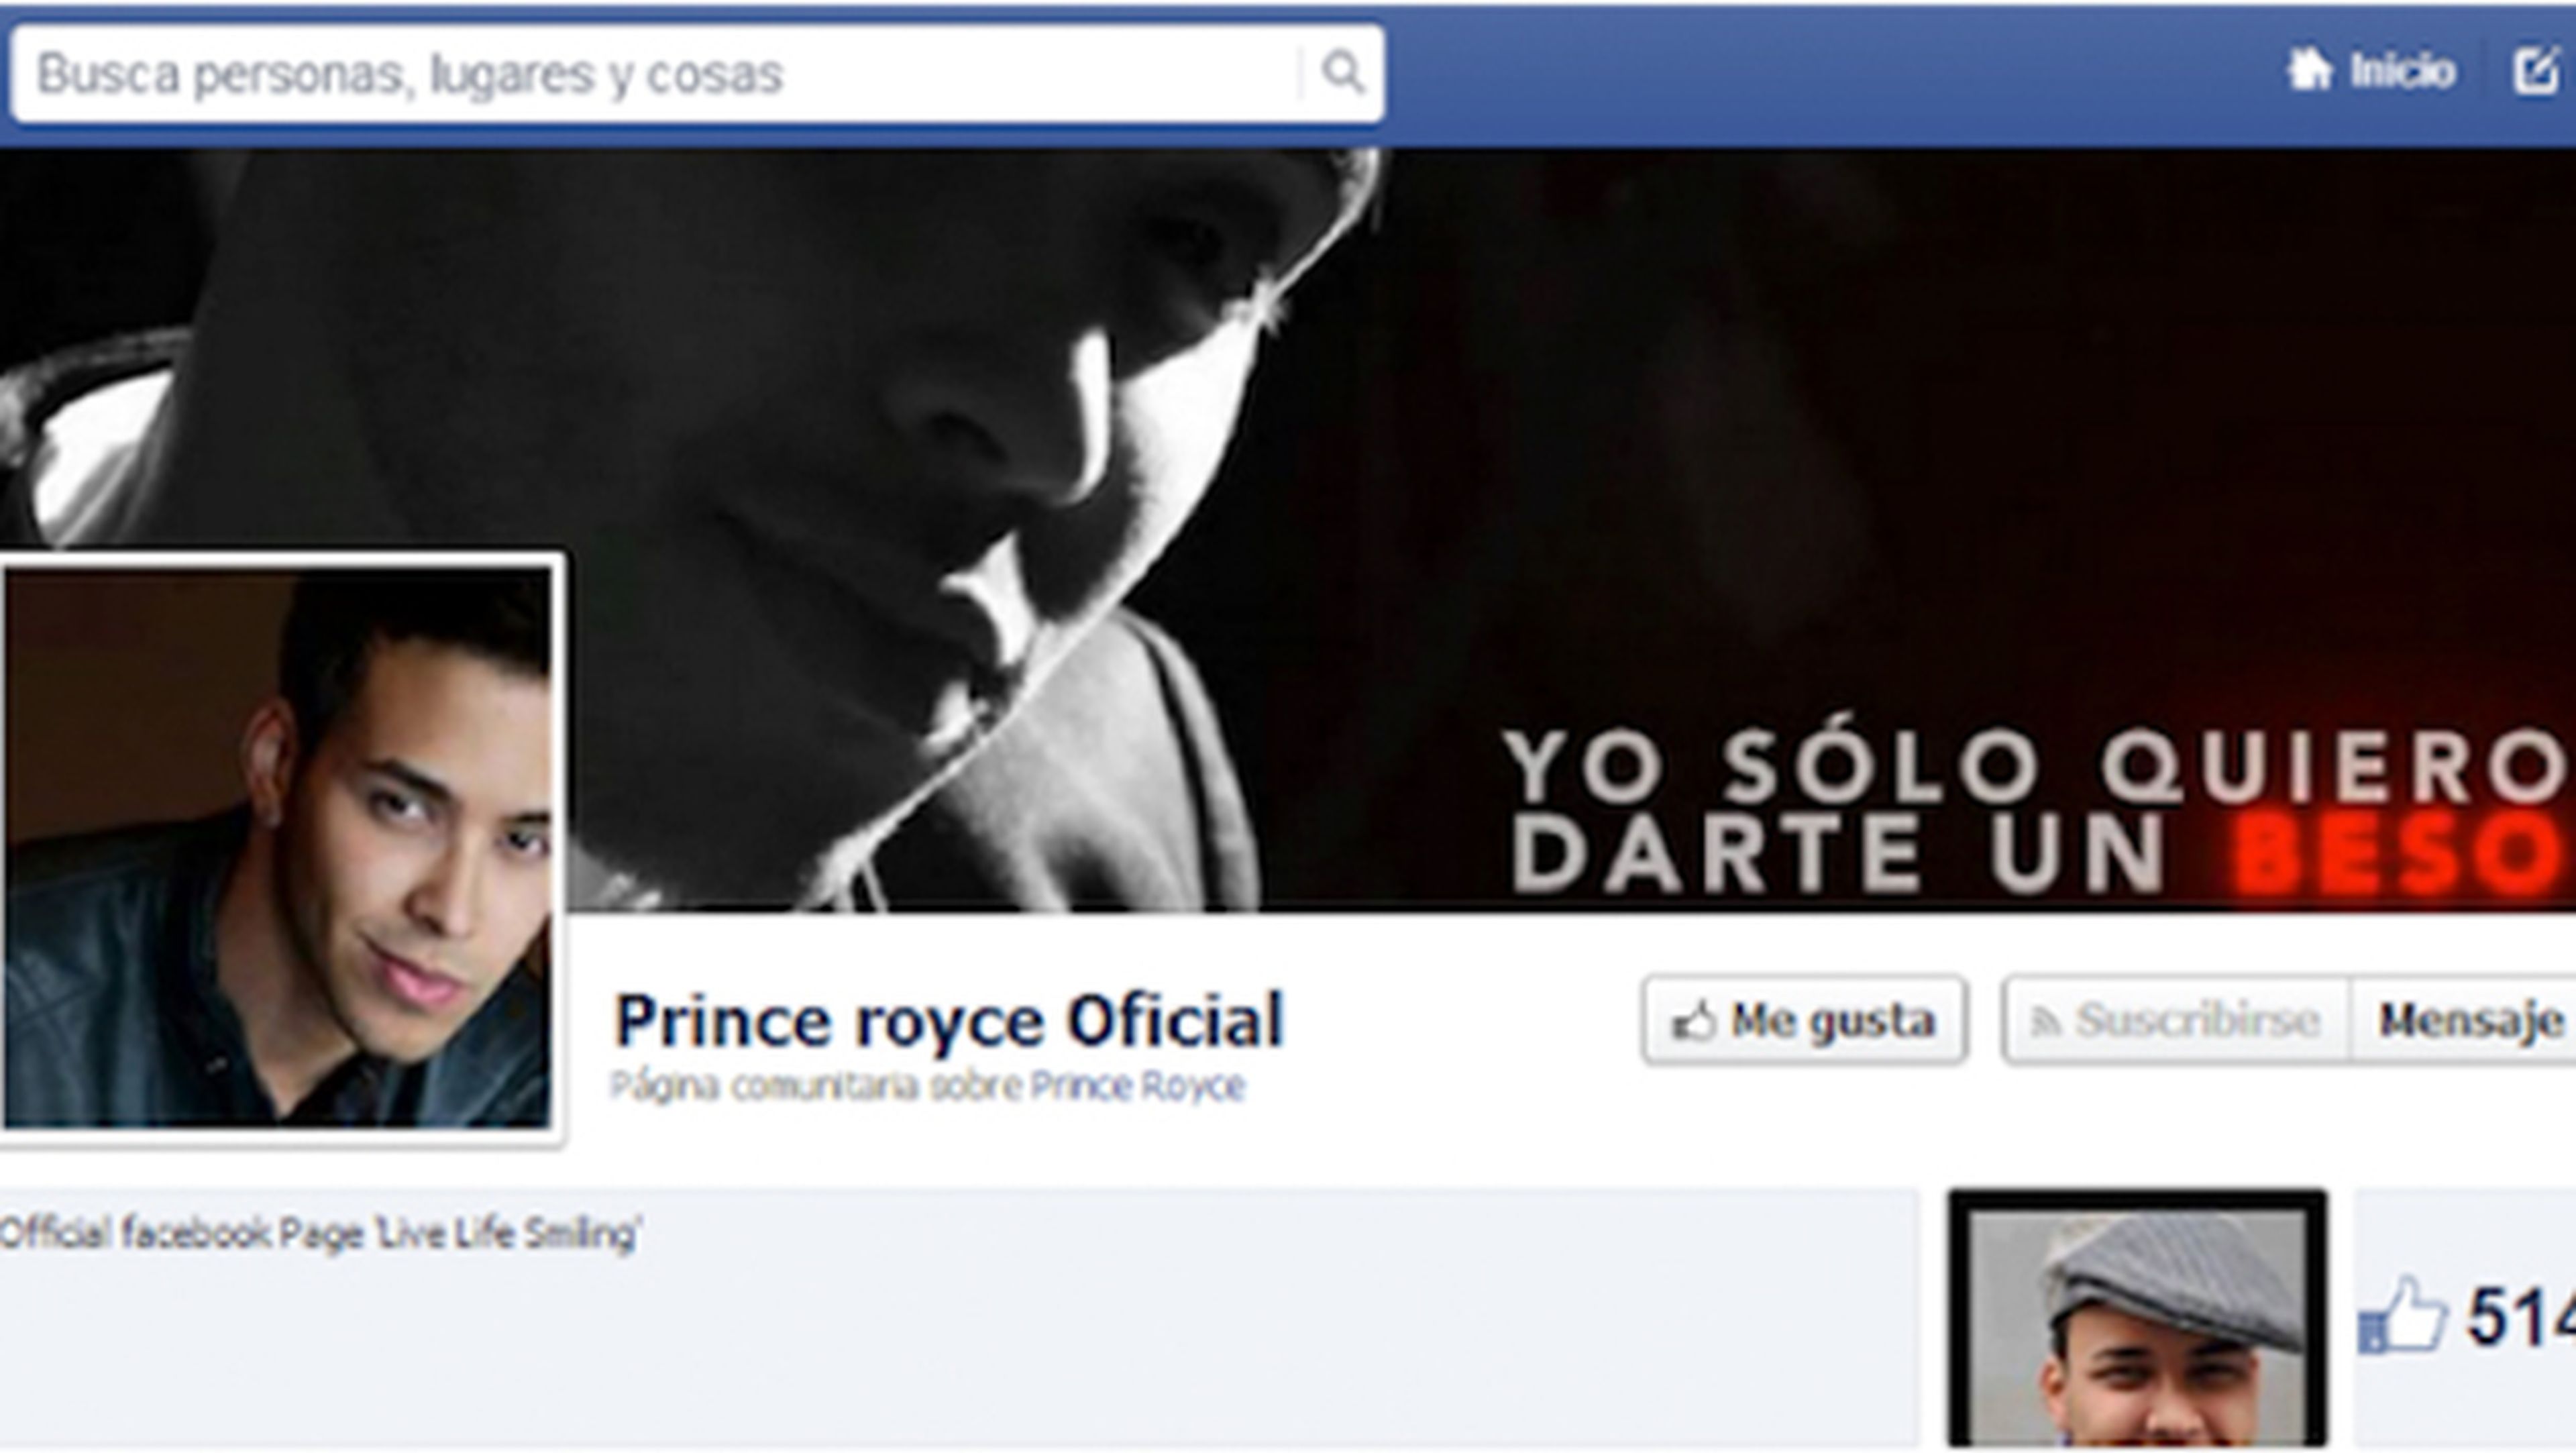 El popular cantante Prince Royce, suplantado en Facebook